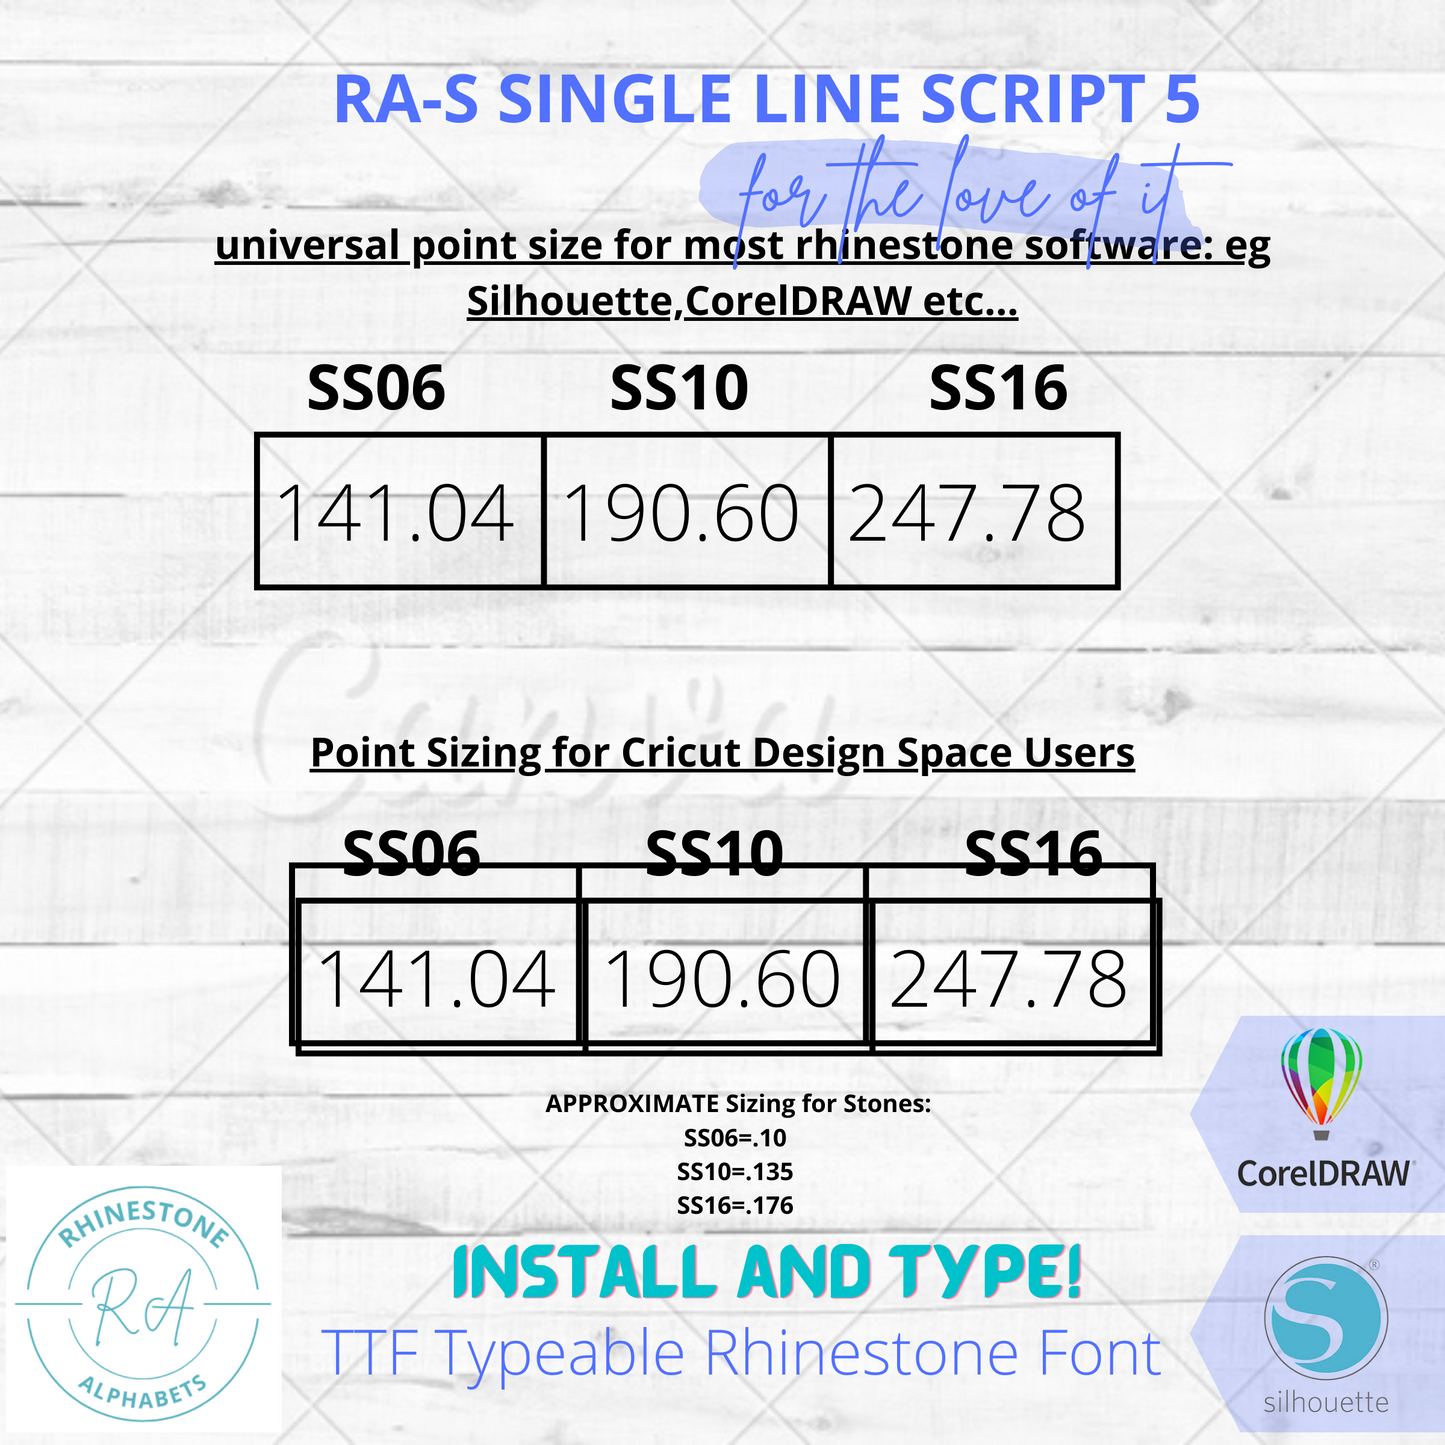 RA-S SIngleline Script 5